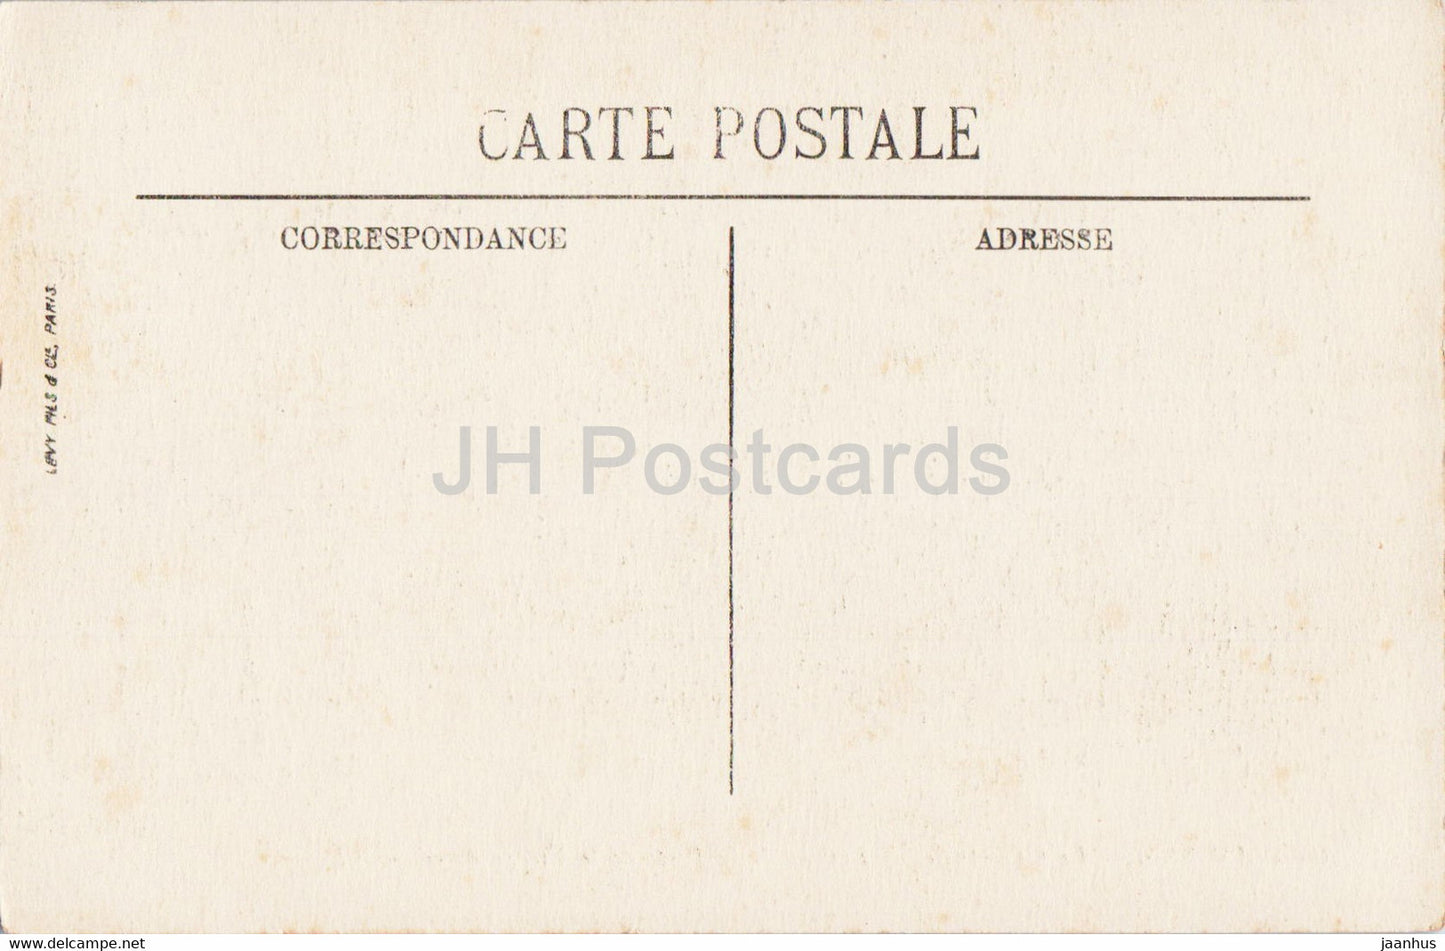 Amiens - La Cathedrale - Linteau de la Porte de la Vierge dorée - 205 - Kathedrale - alte Postkarte - Frankreich - unbenutzt